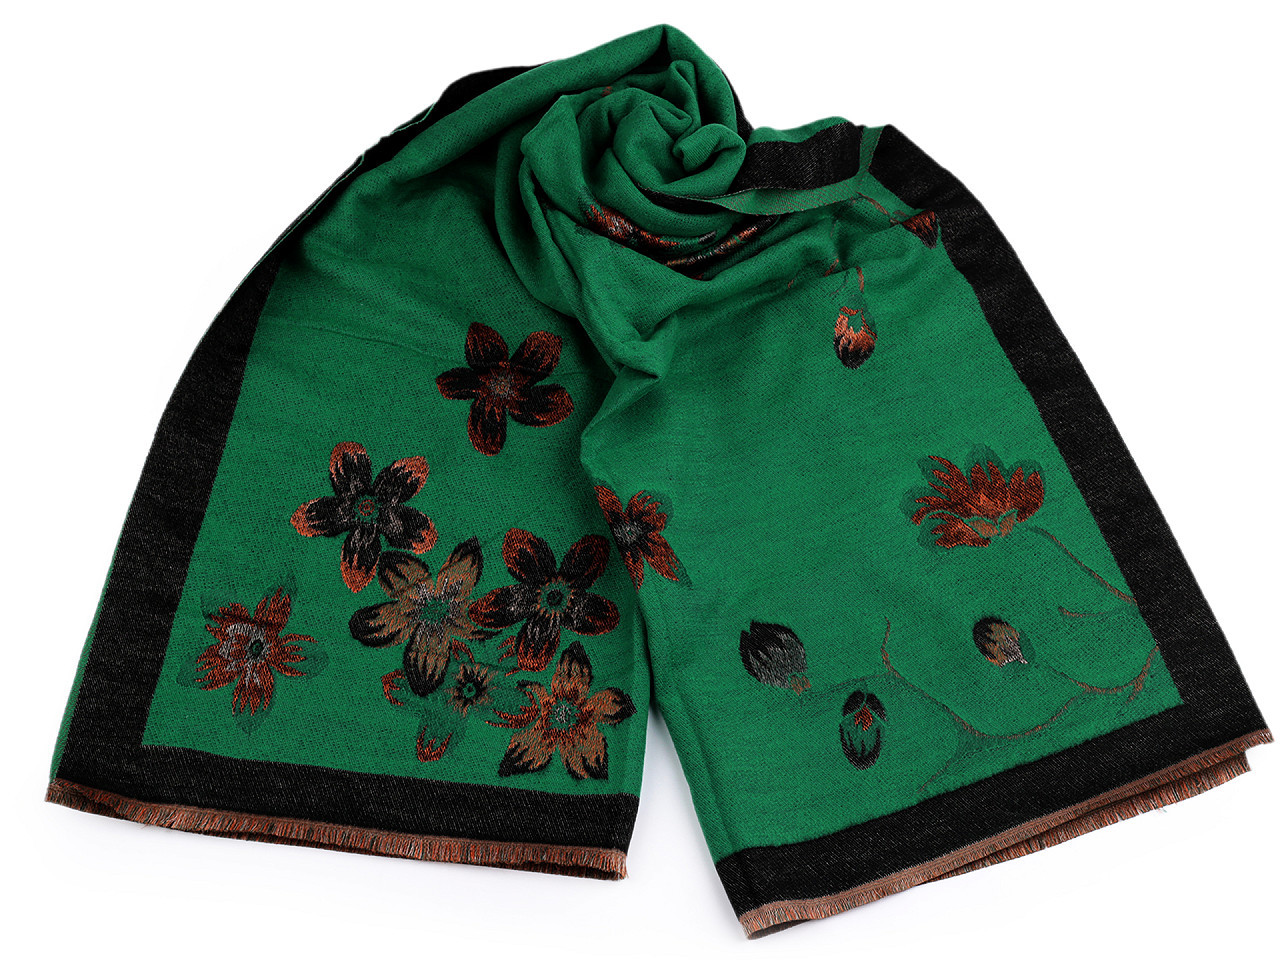 Šátek / šála typu kašmír s třásněmi, květy 65x190 cm, barva 5 zelená pastelová hnědá